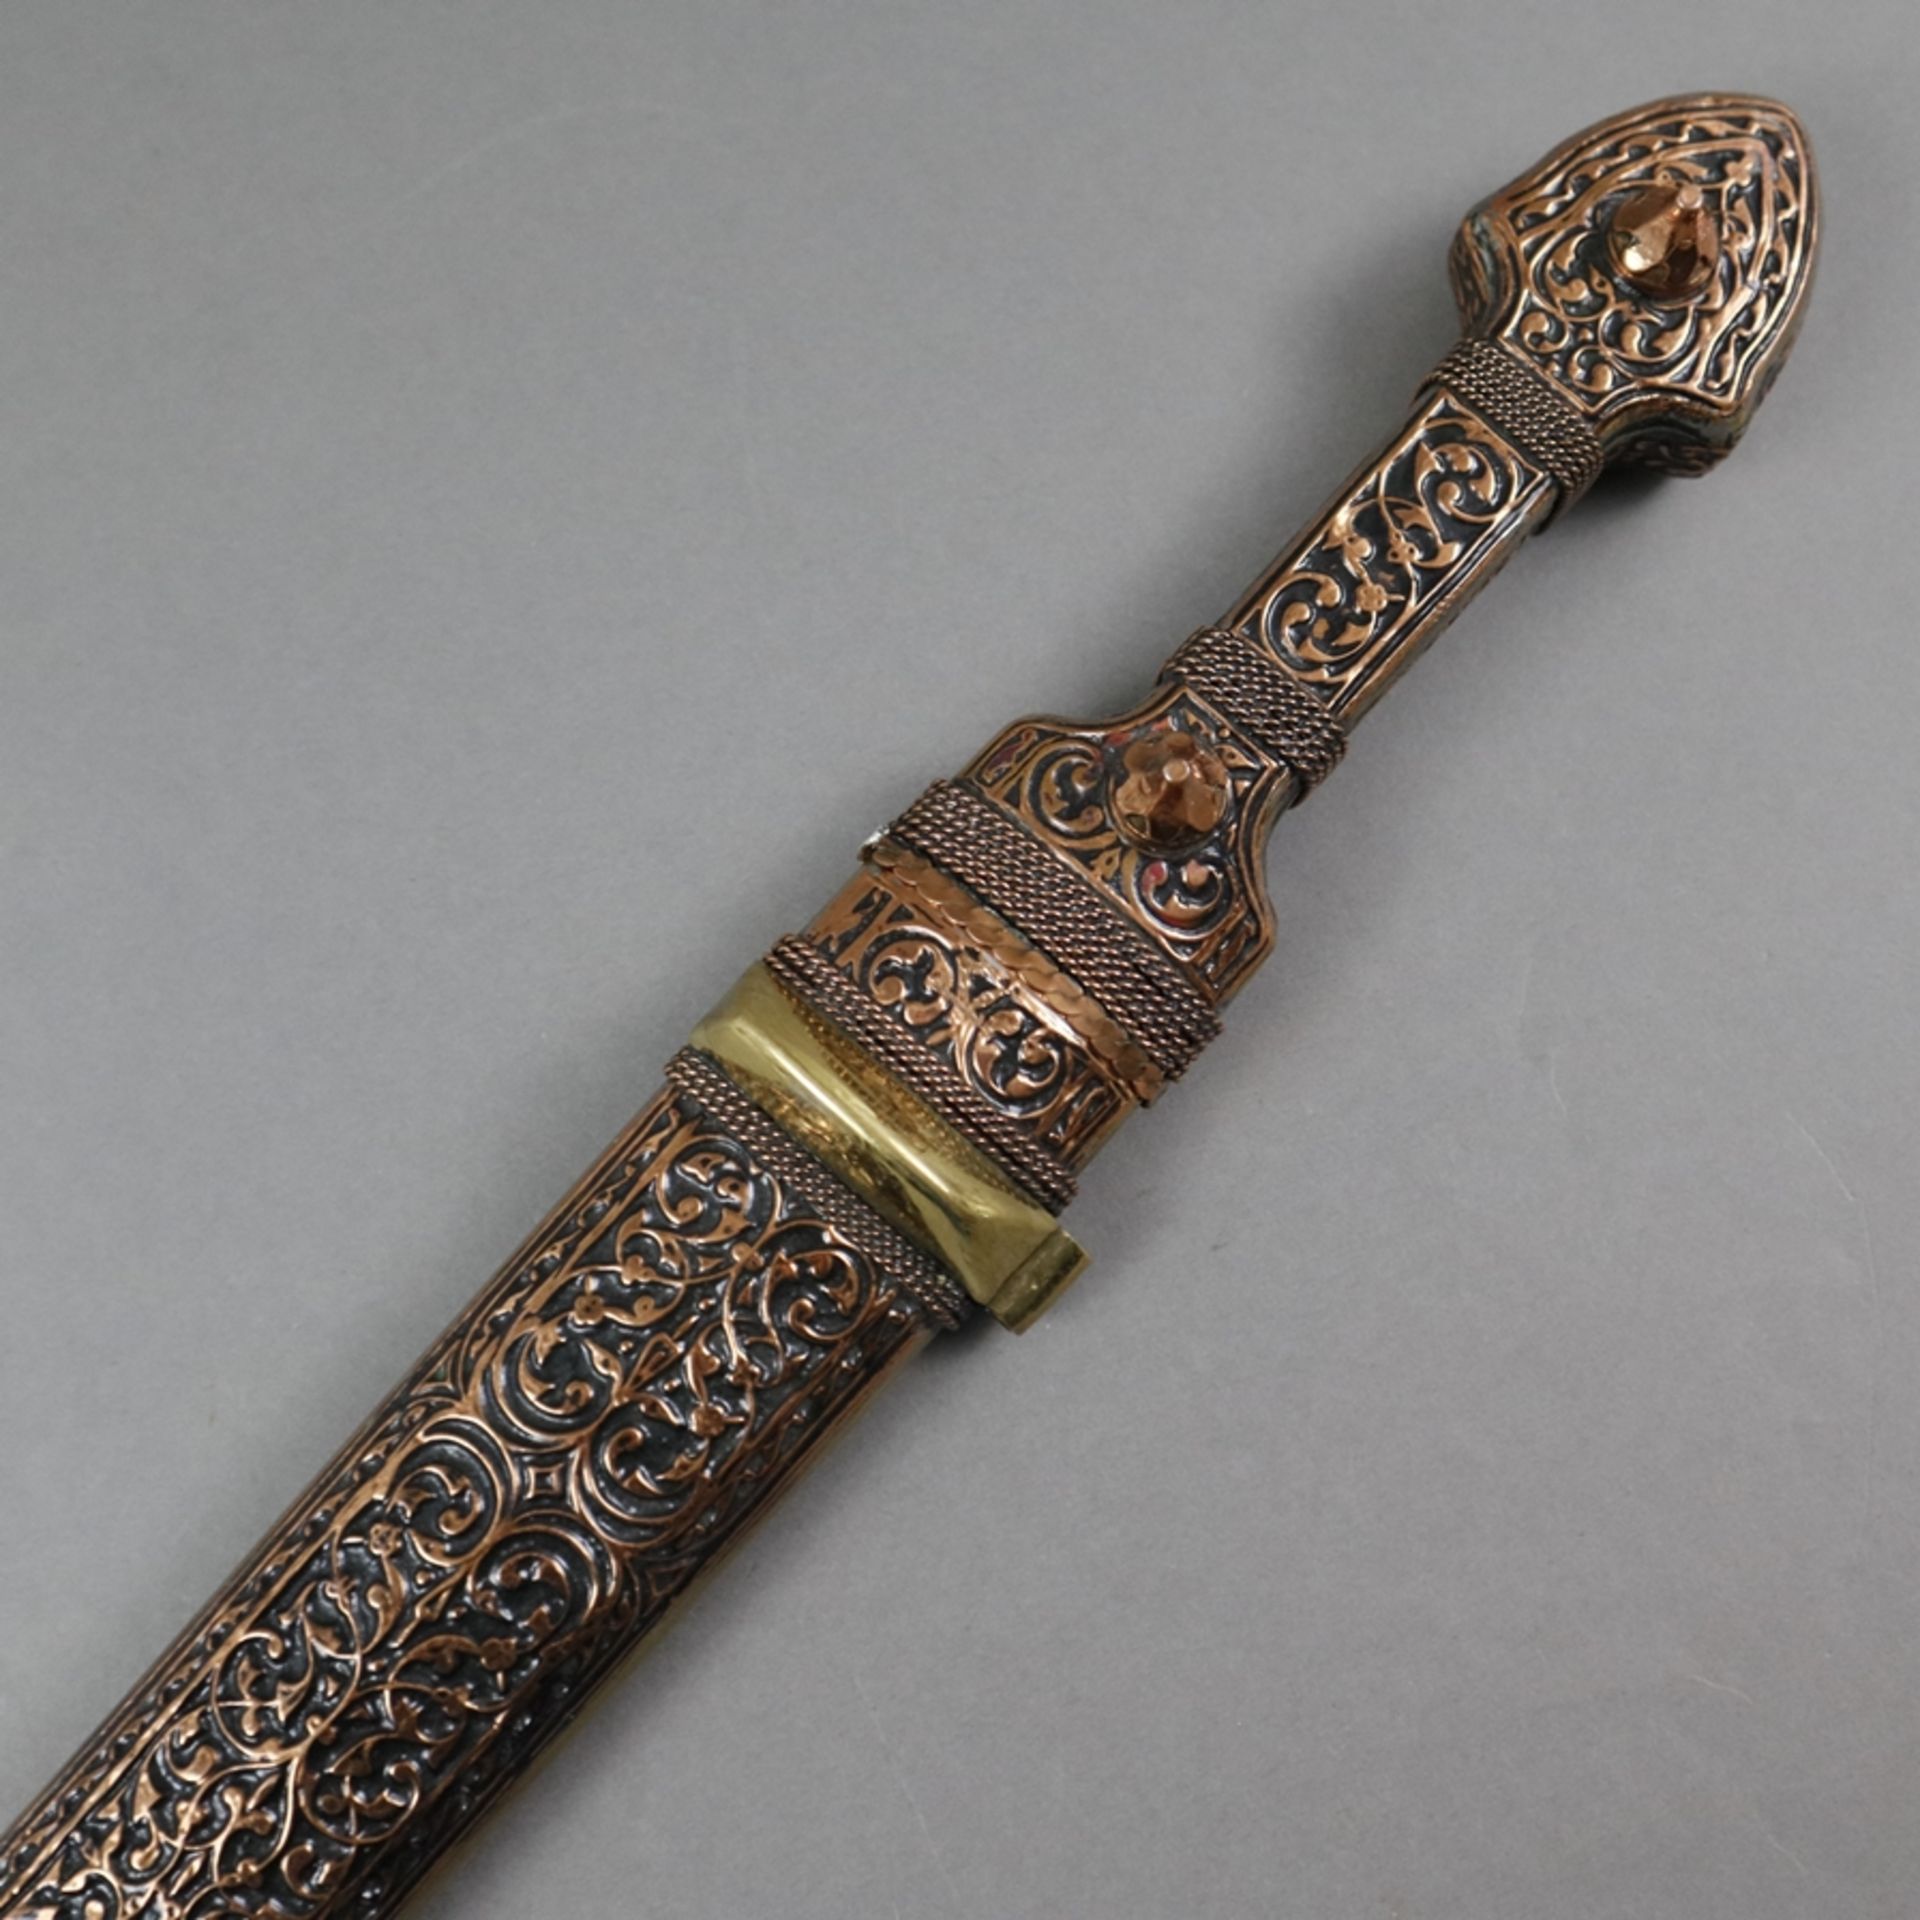 Kindschal / Qama - kaukasisch, 20. Jh., Kupfer / Messing, zweischneidige einfach gekehlte Stahlklin - Image 6 of 6